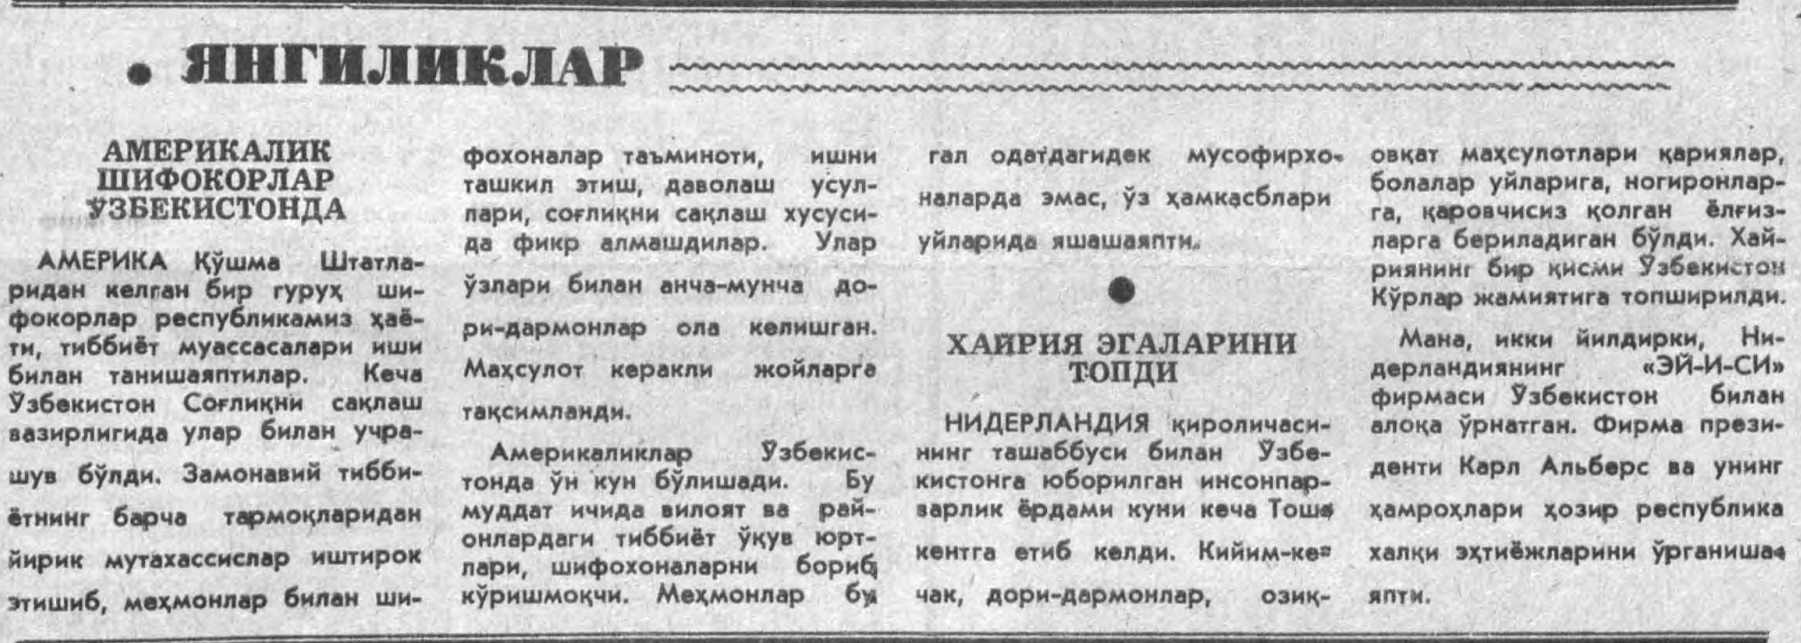 «Халқ сўзи» газетасининг 1992 йил 30 апрель сонидан лавҳа